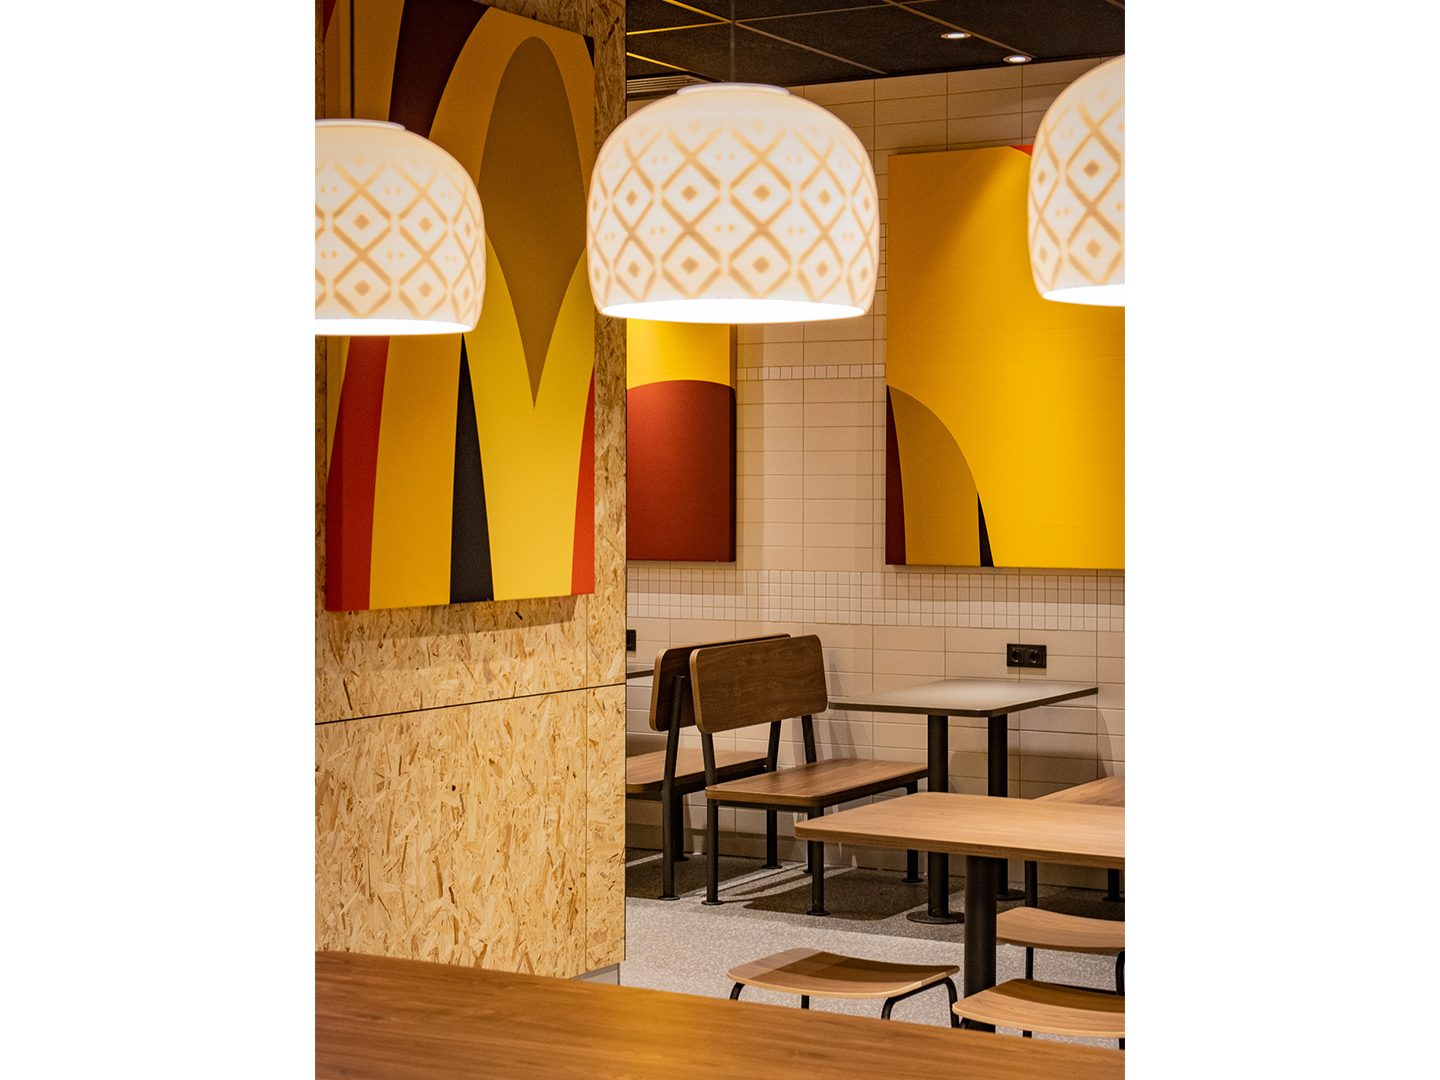 Conception de restaurant - Meubles de restauration sur mesure - McDonald's Touch of Archery - Luminaires sur mesure - Meubles sur mesure - Industrie de la restauration